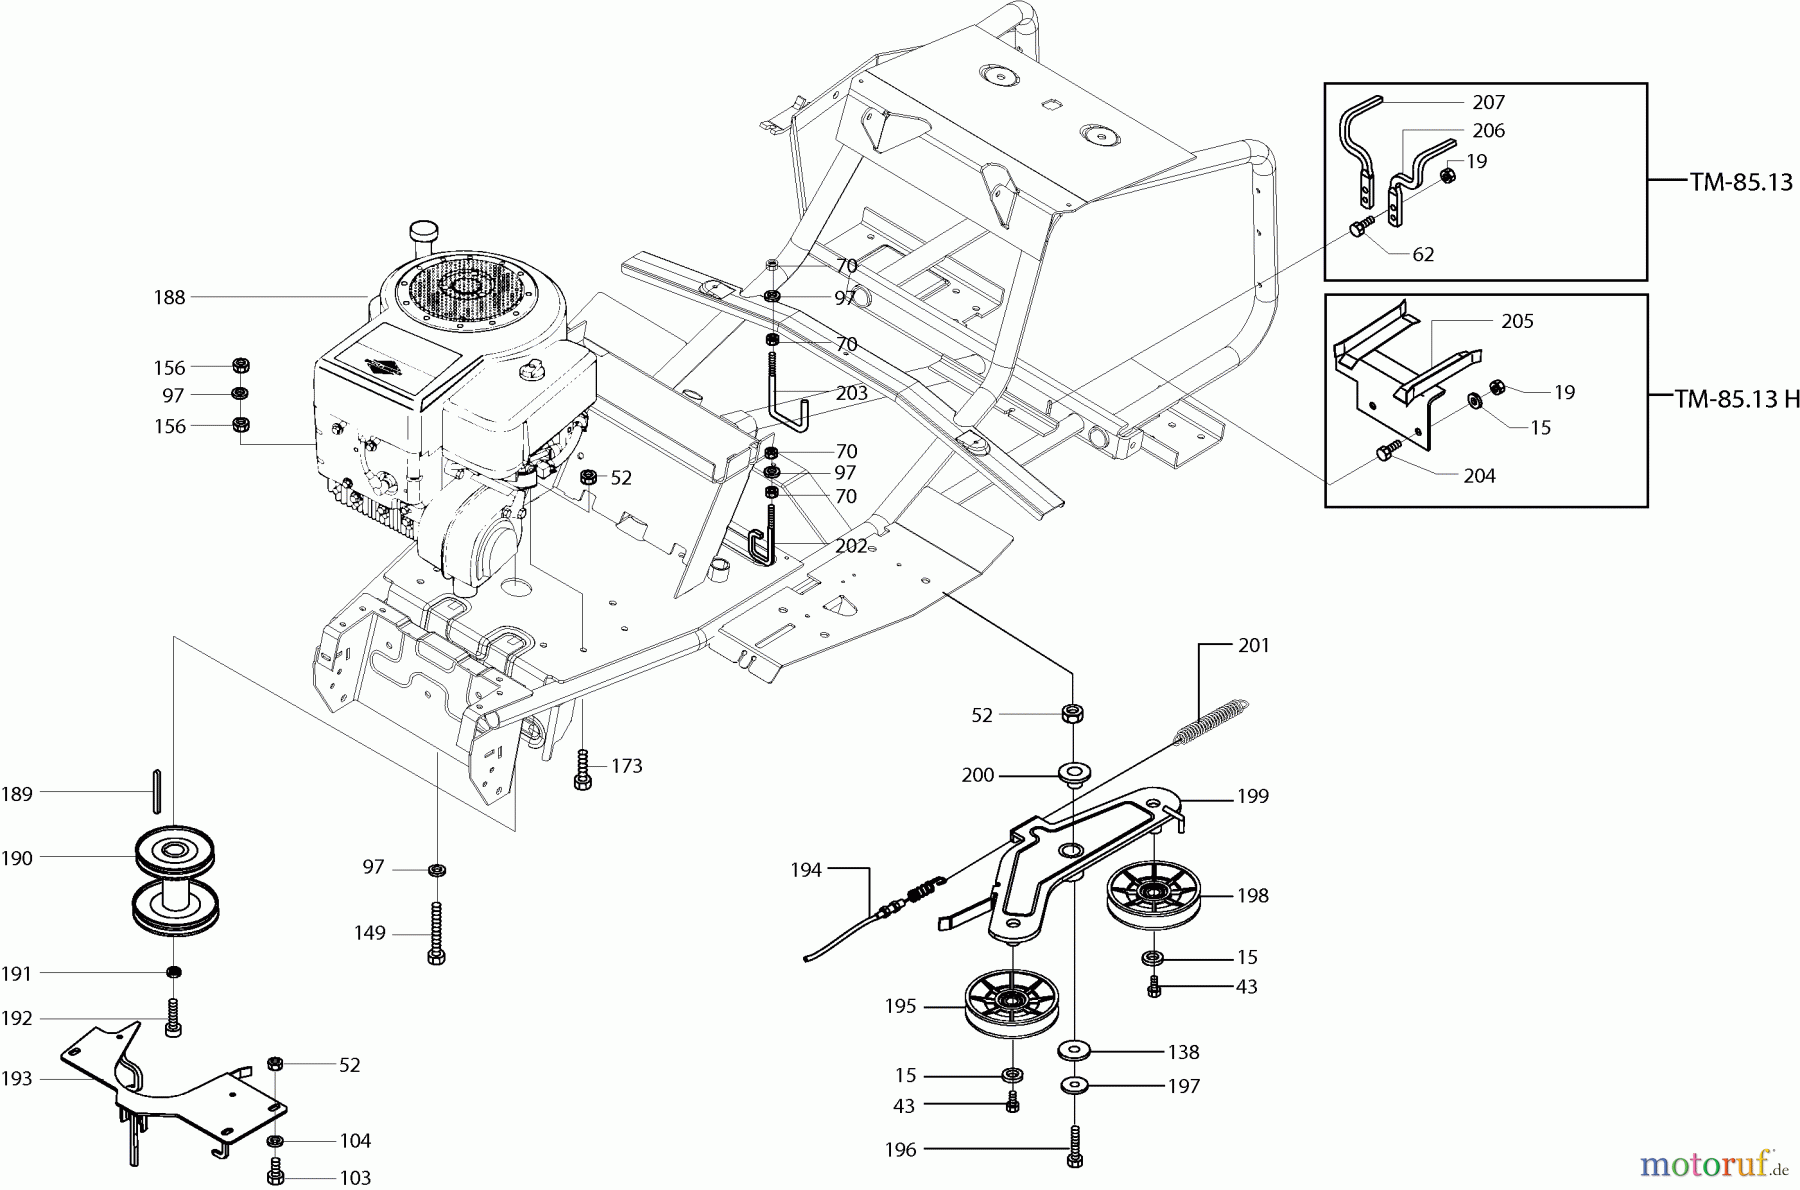  Dolmar Rasentraktoren TM-85.13 H TM-85.13 H (2001) 5  MOTOR